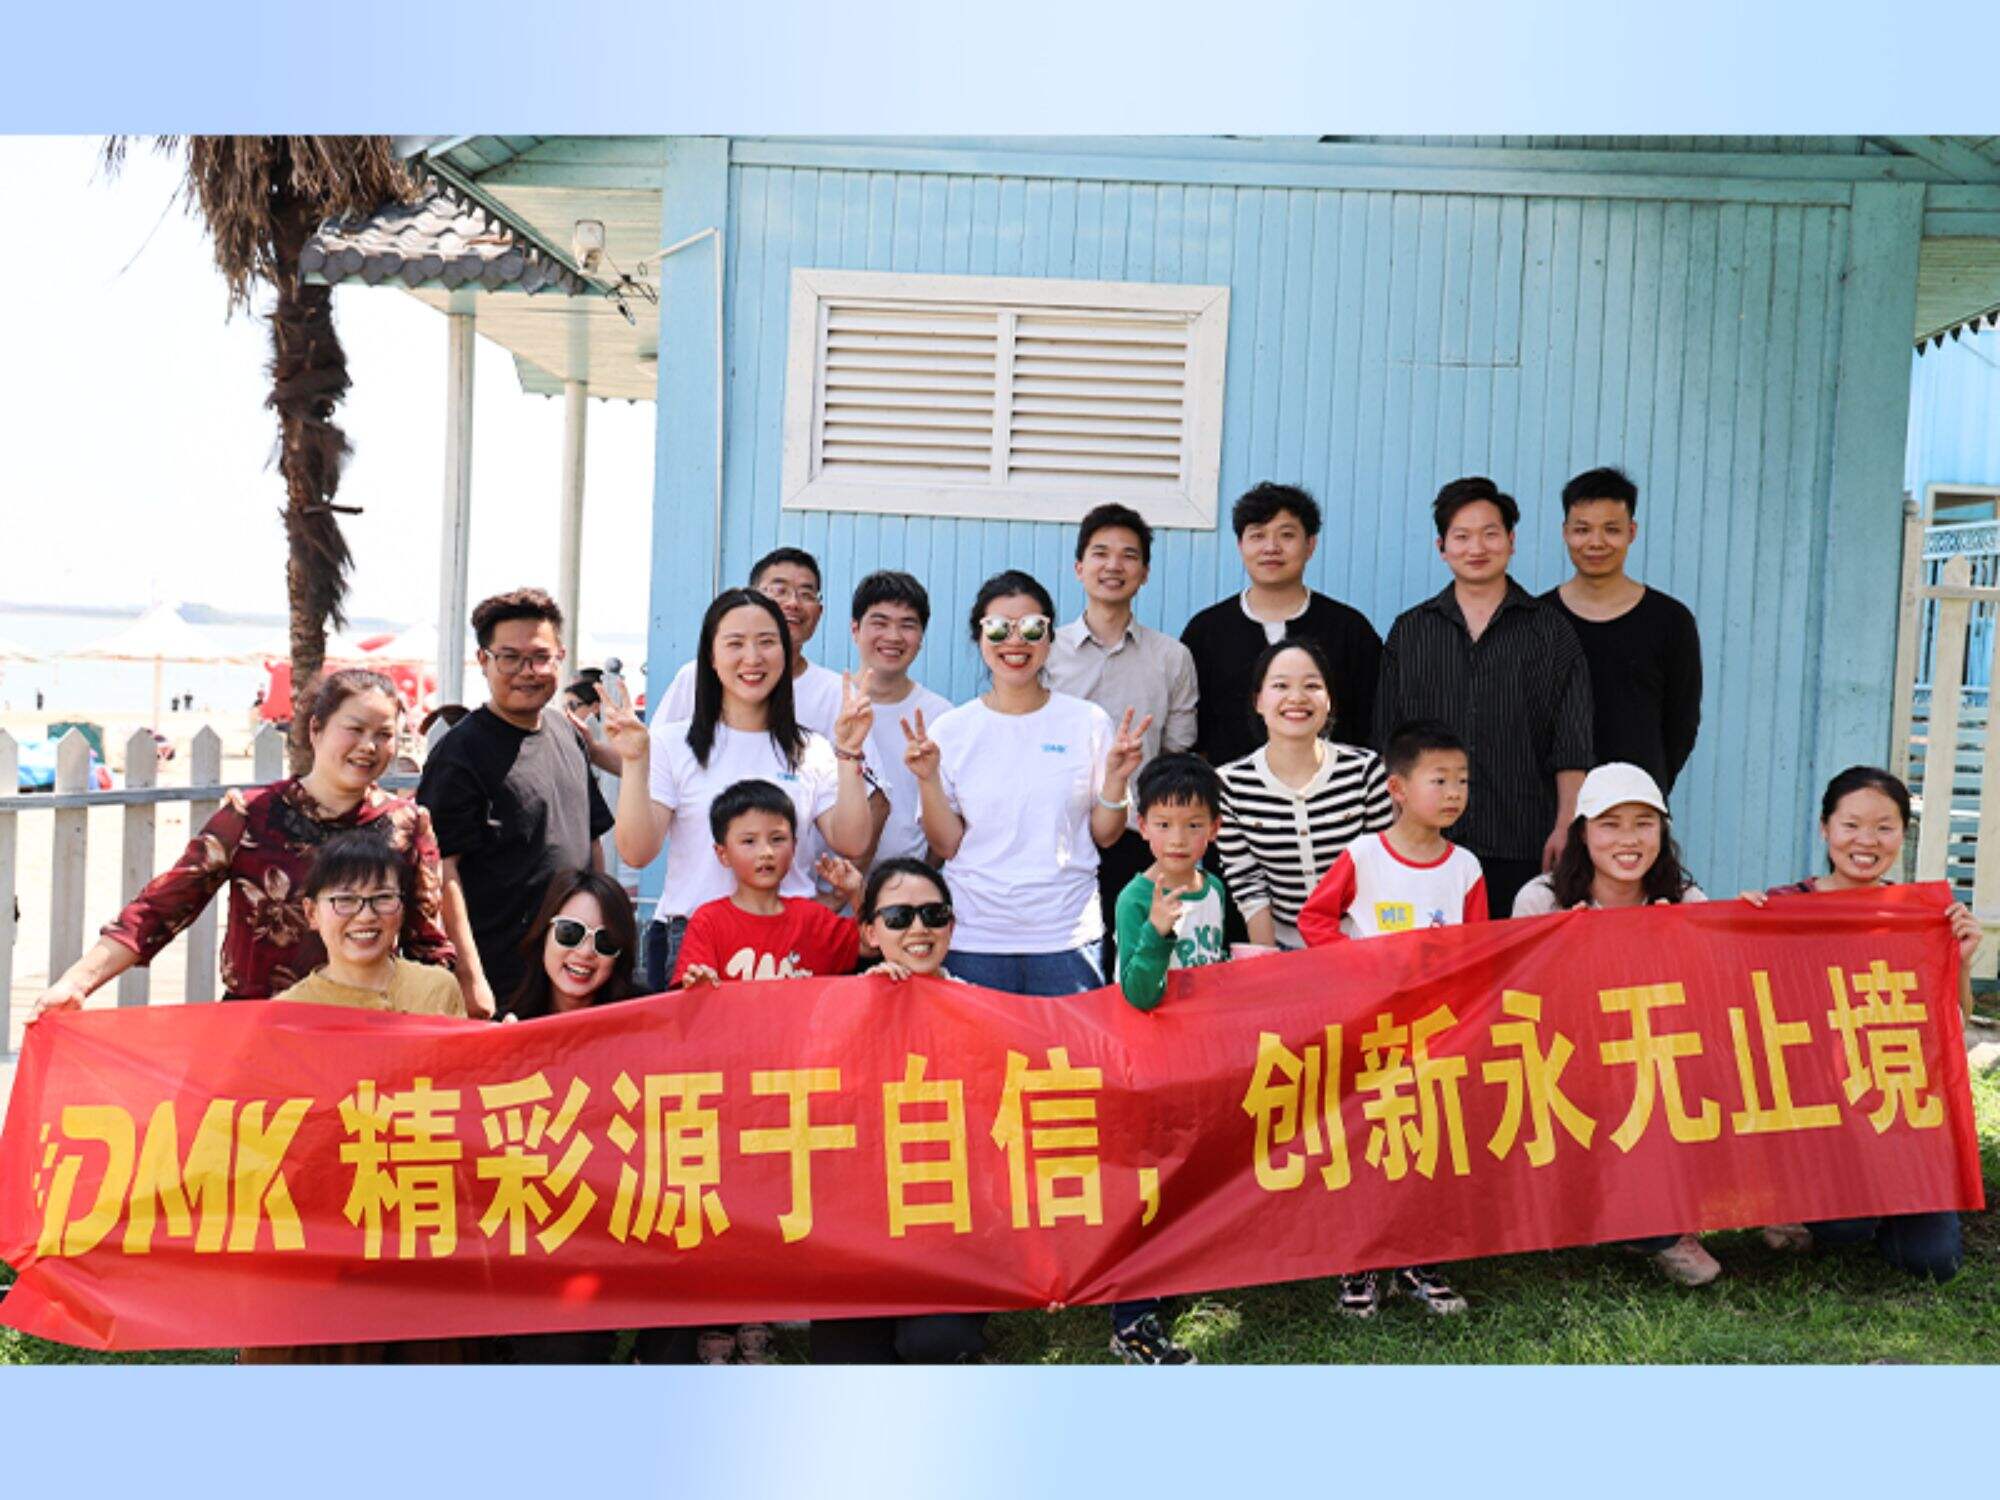 デマーク・カンパニーが武漢の良子湖龍湾リゾートで盛大なチームビルディングイベントを開催